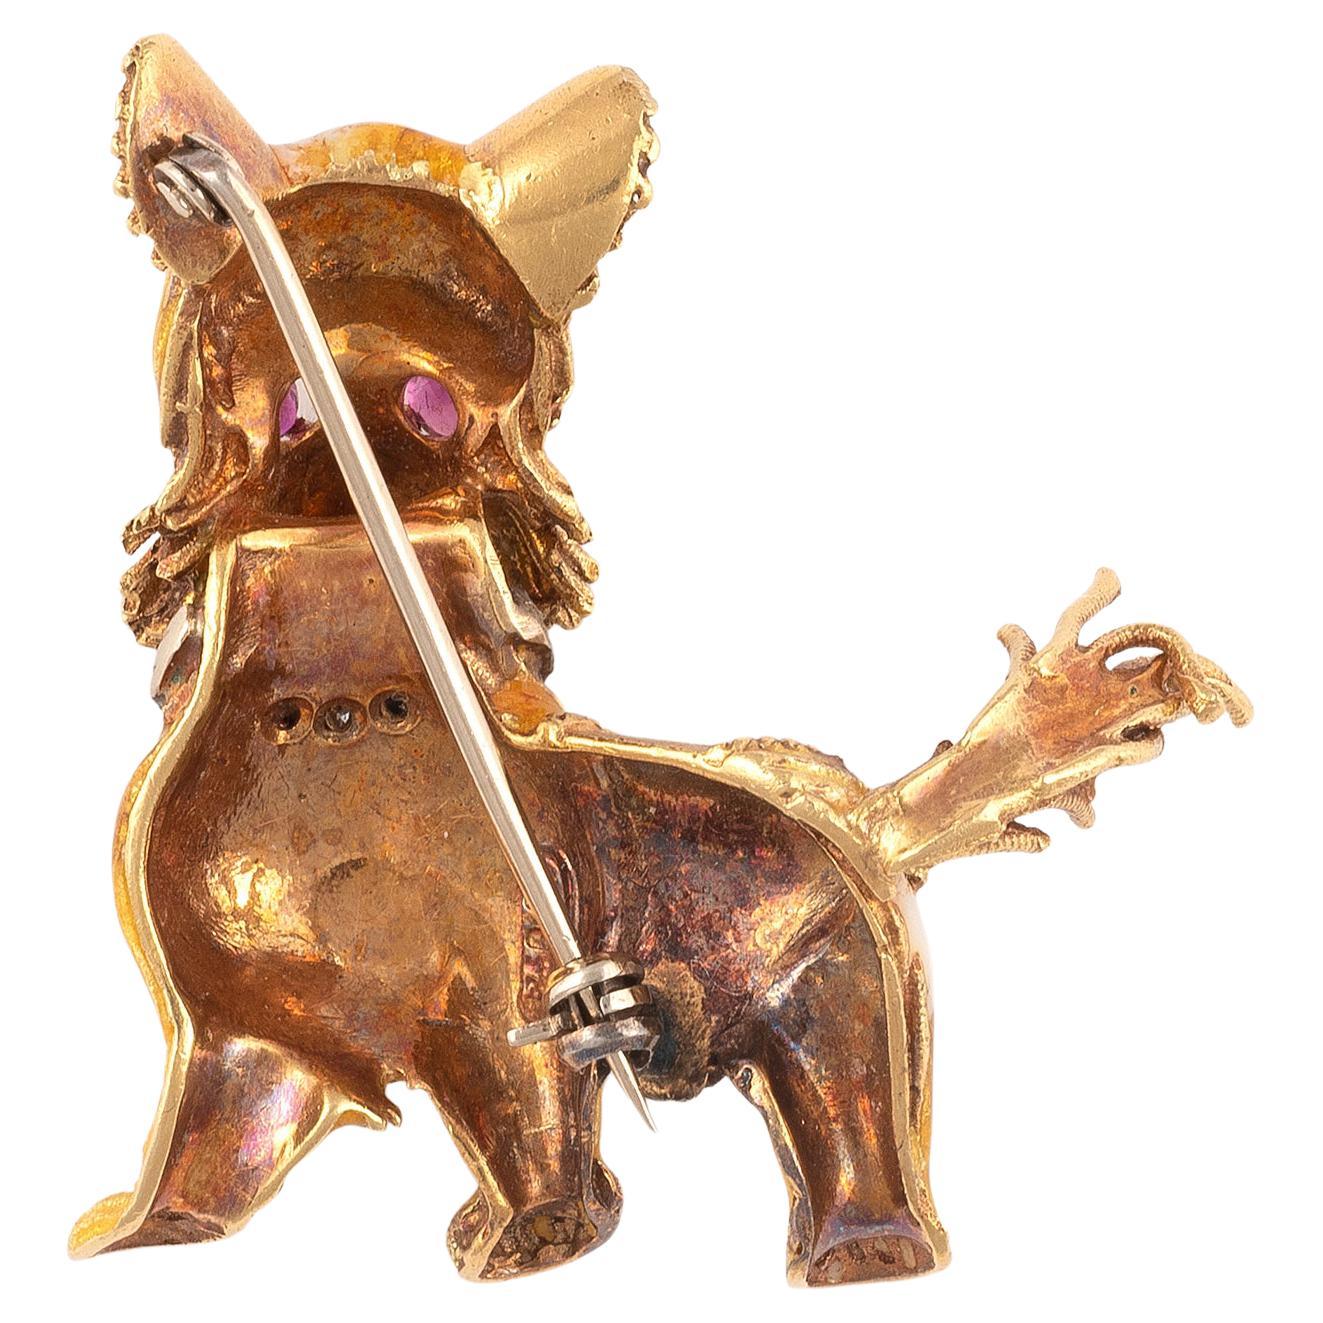 
Hund aus 18 Karat Gelbgold mit einem Halsband aus einem Diamanten im Einzelschliff, die Augen mit einem Rubin im Rundschliff besetzt, Körper aus gelbem und weißem Guilloche-Email mit strukturierten und polierten Details, Länge 5,2 cm